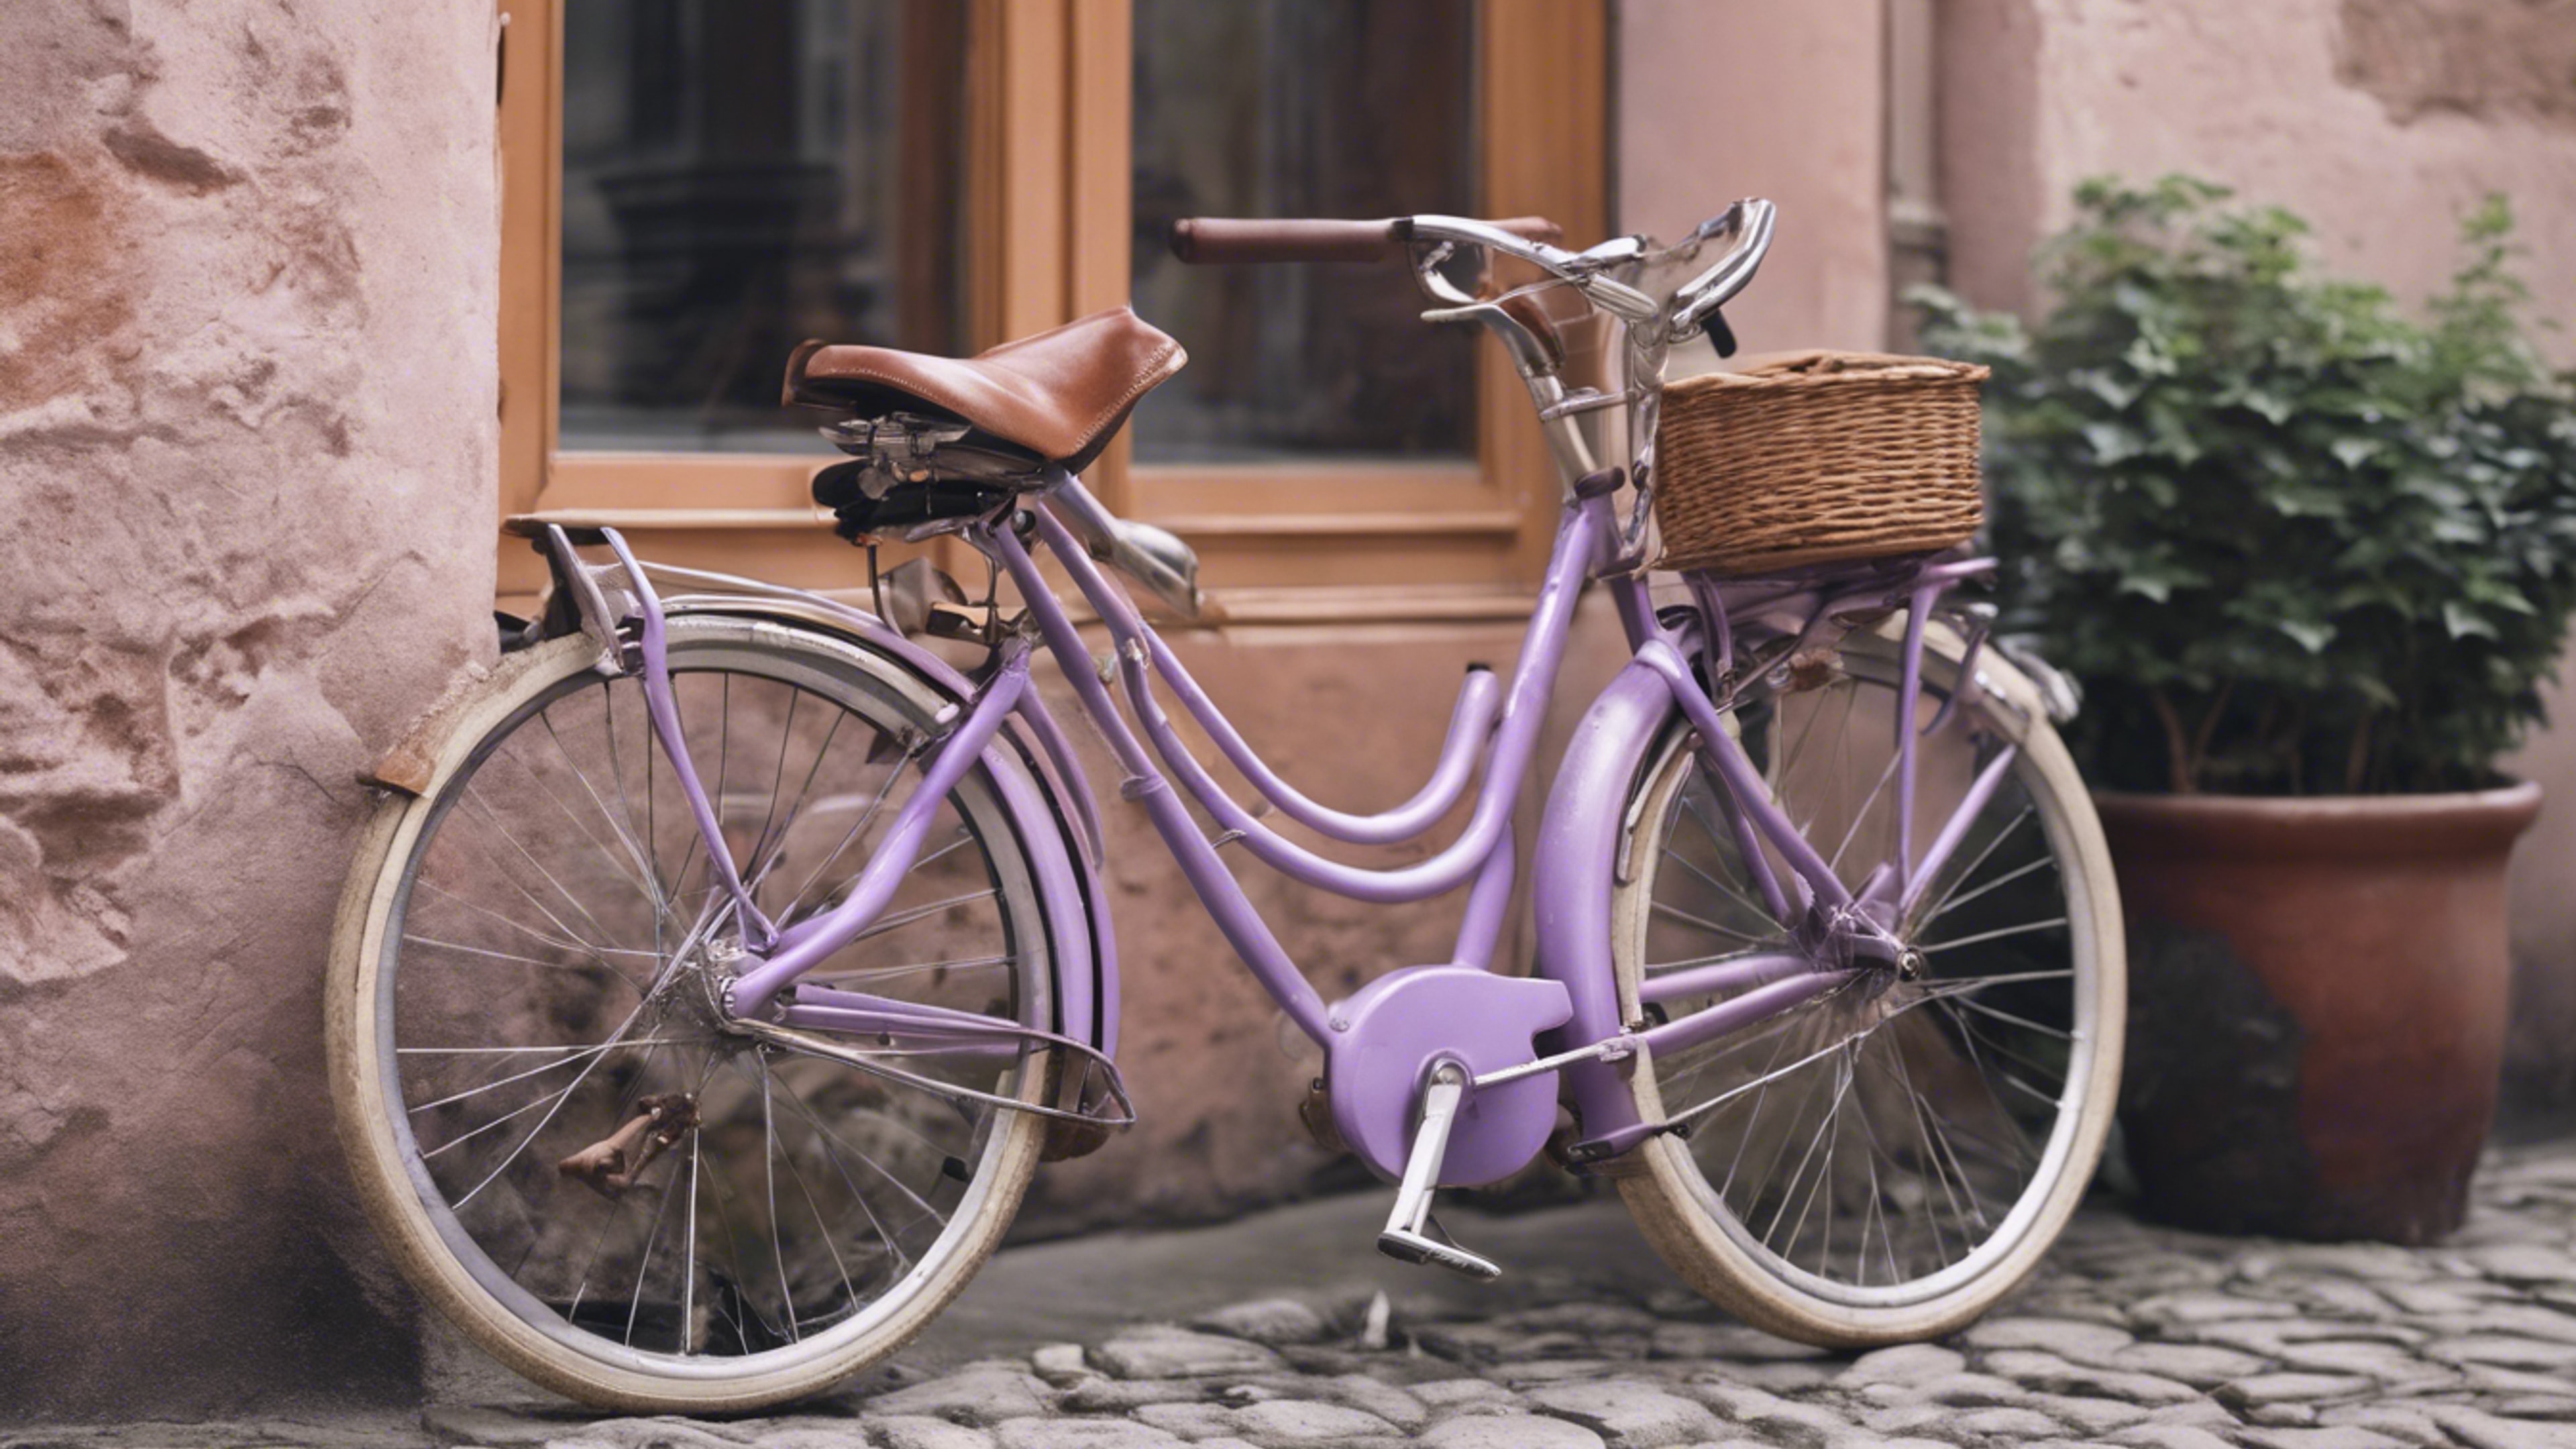 A vintage pastel purple bicycle leaning against a cobblestone wall. Divar kağızı[62be16075cb04ce6b9da]